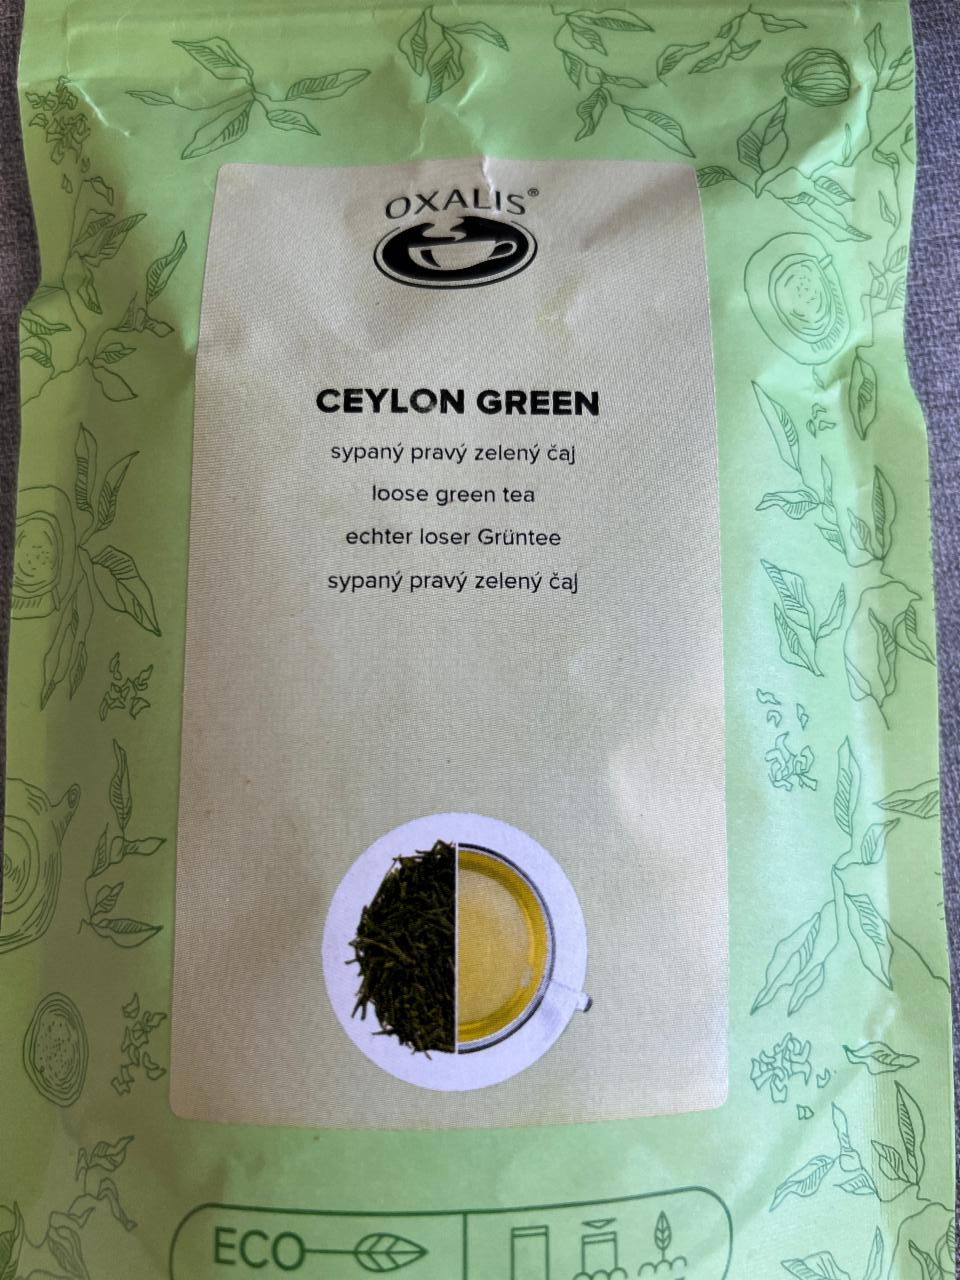 Fotografie - Ceylon Green sypaný pravý zelený čaj Oxalis